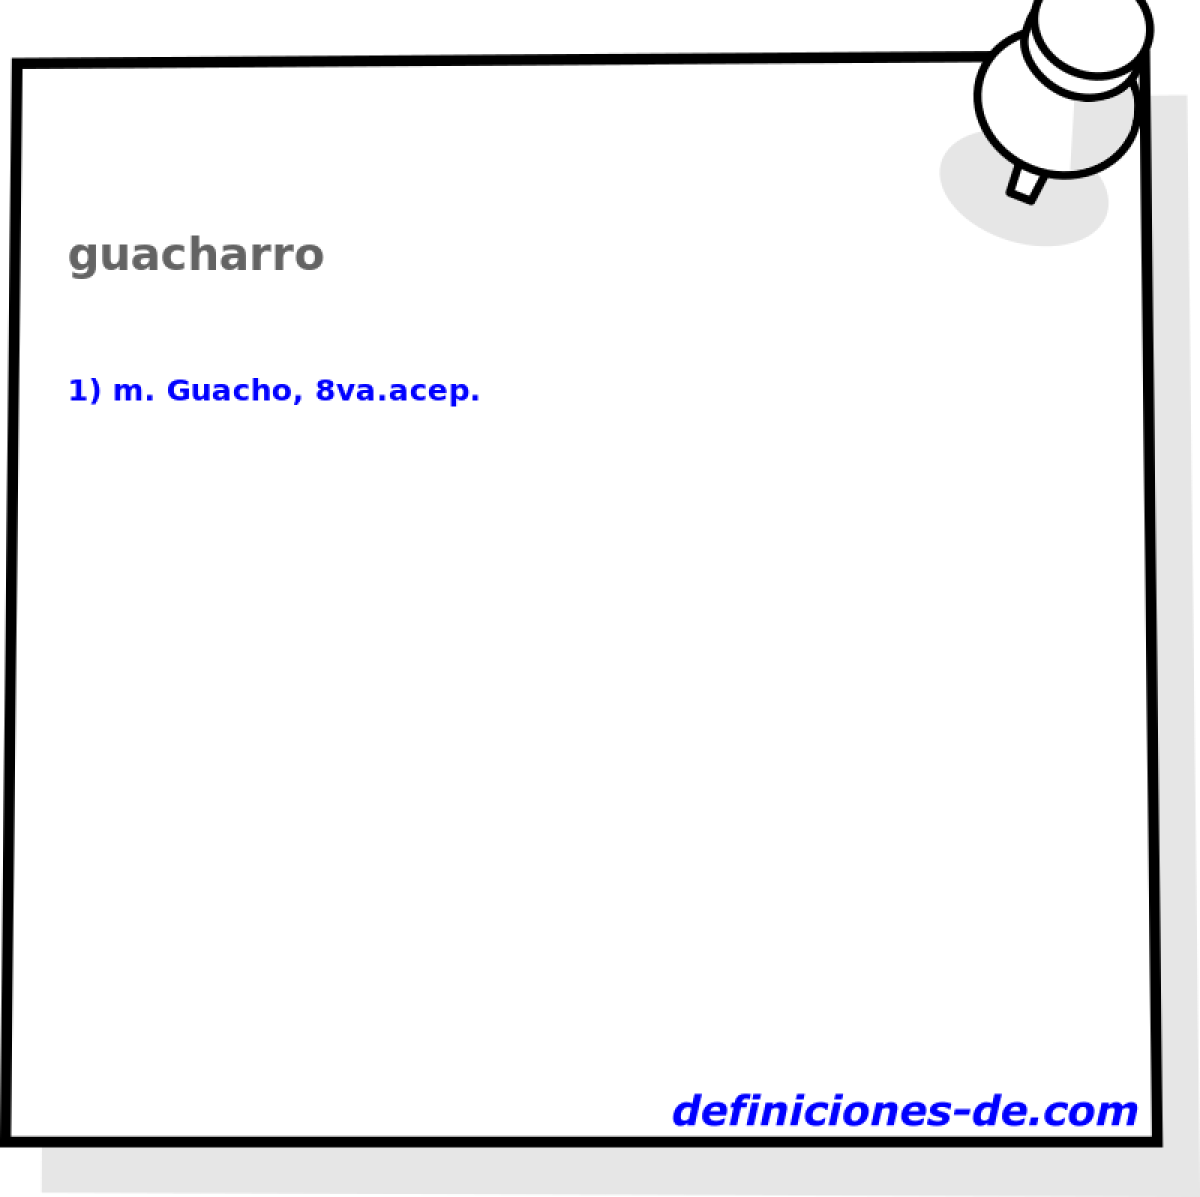 guacharro 